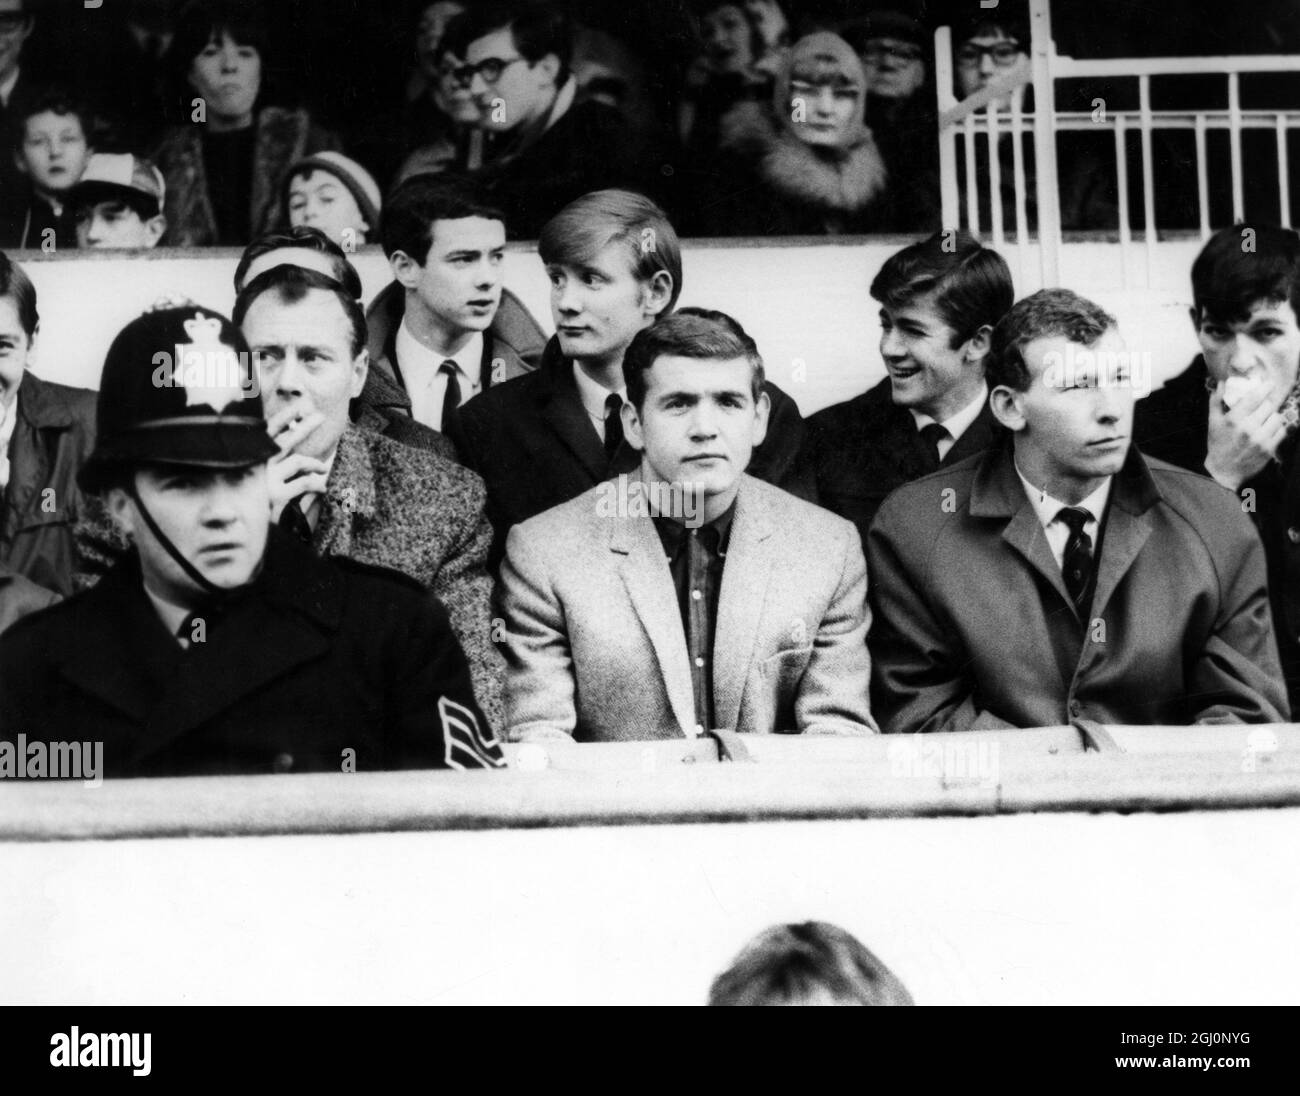 Arsenal Reserves / Plymouth Argyle Reserves at Highbury . Joe Baker , che è stato abbandonato dalla squadra dell'Arsenal e messo sulla lista di trasferimento non ha giocato a causa di un ginocchio ferito . Eastham che è stato anche abbandonato giocato a Inside-left . 29 gennaio 1966 Foto Stock